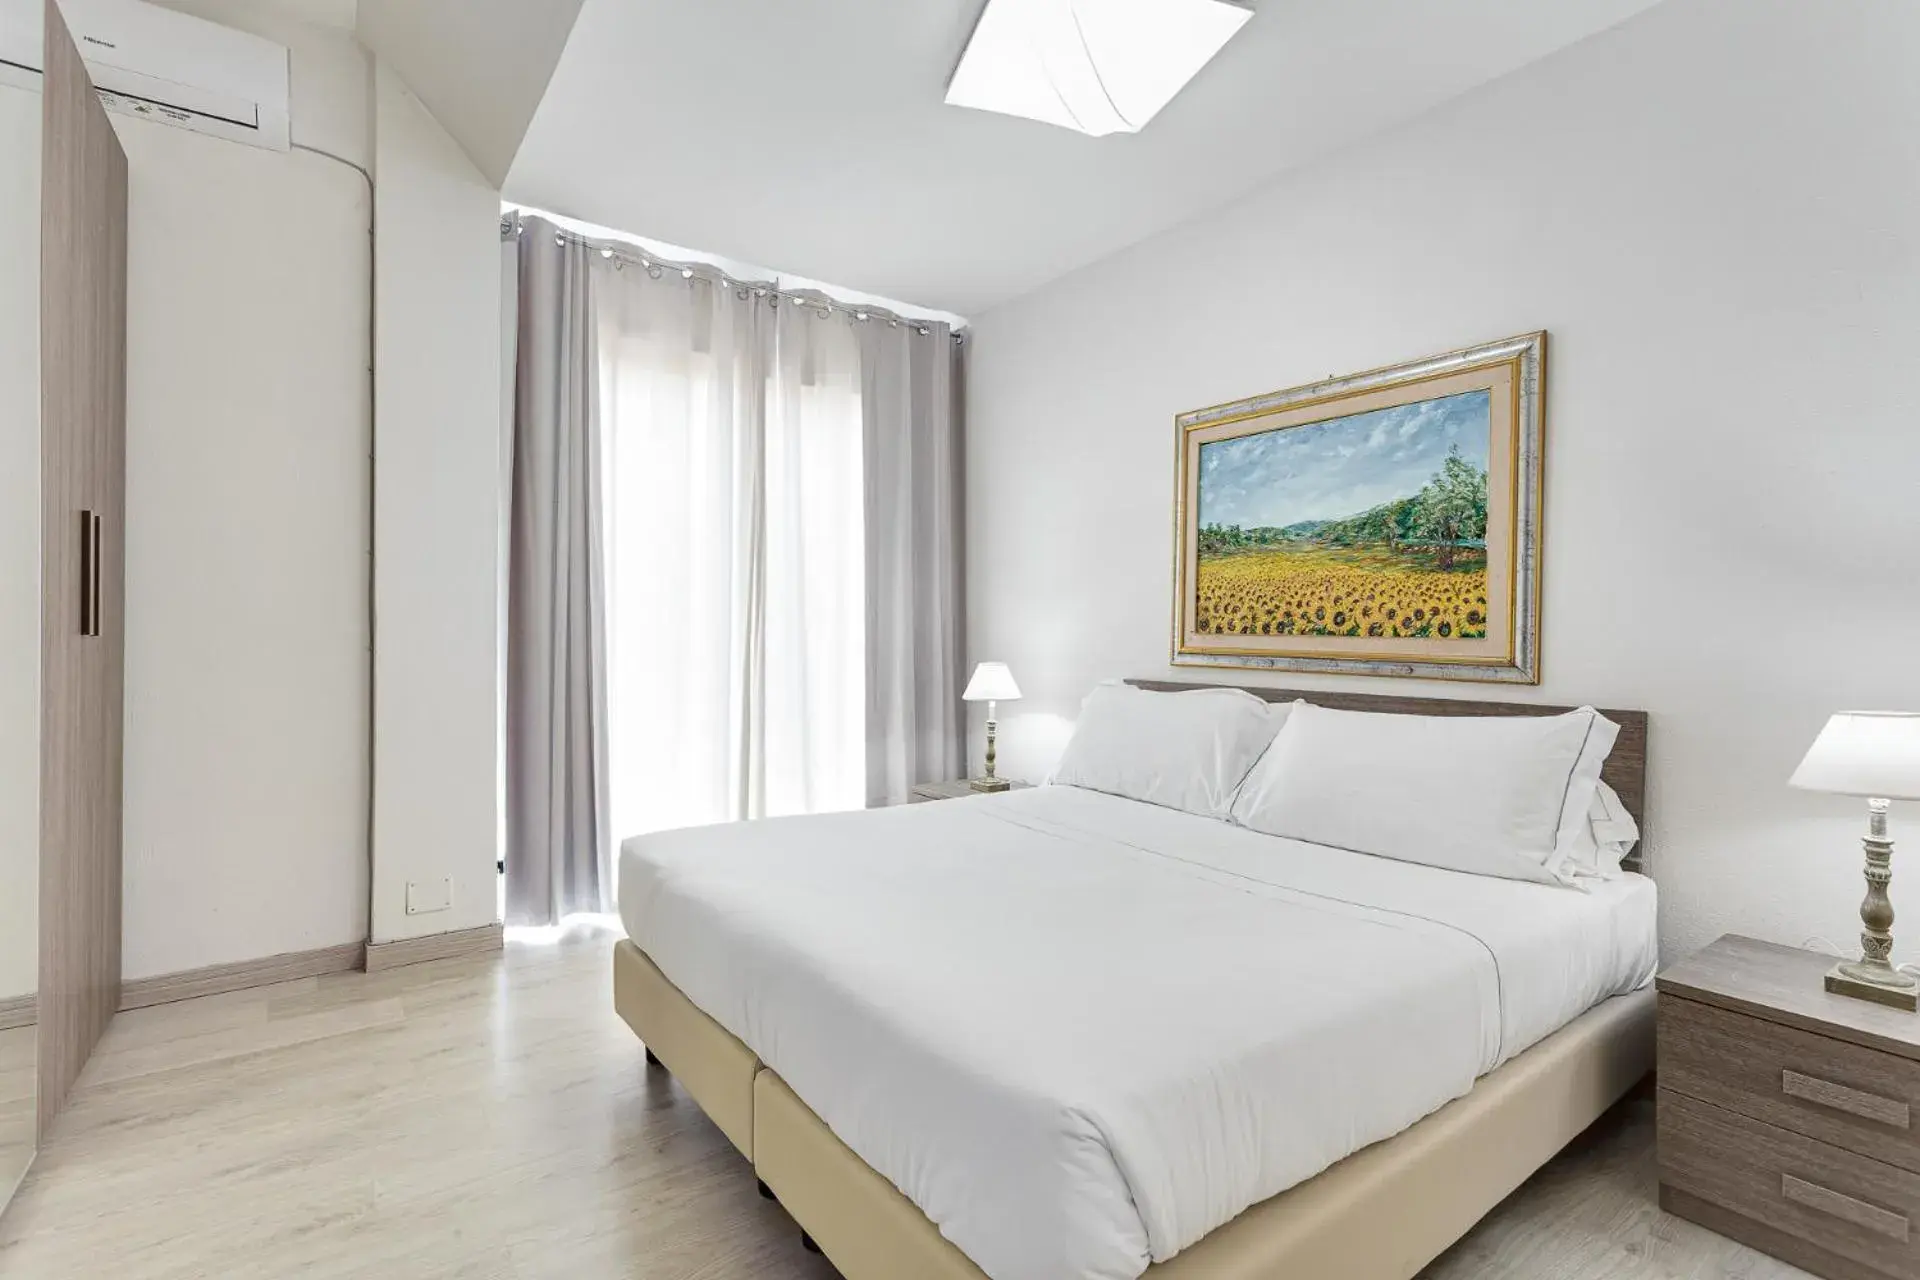 Deluxe Room in Hotel Cavalluccio Marino